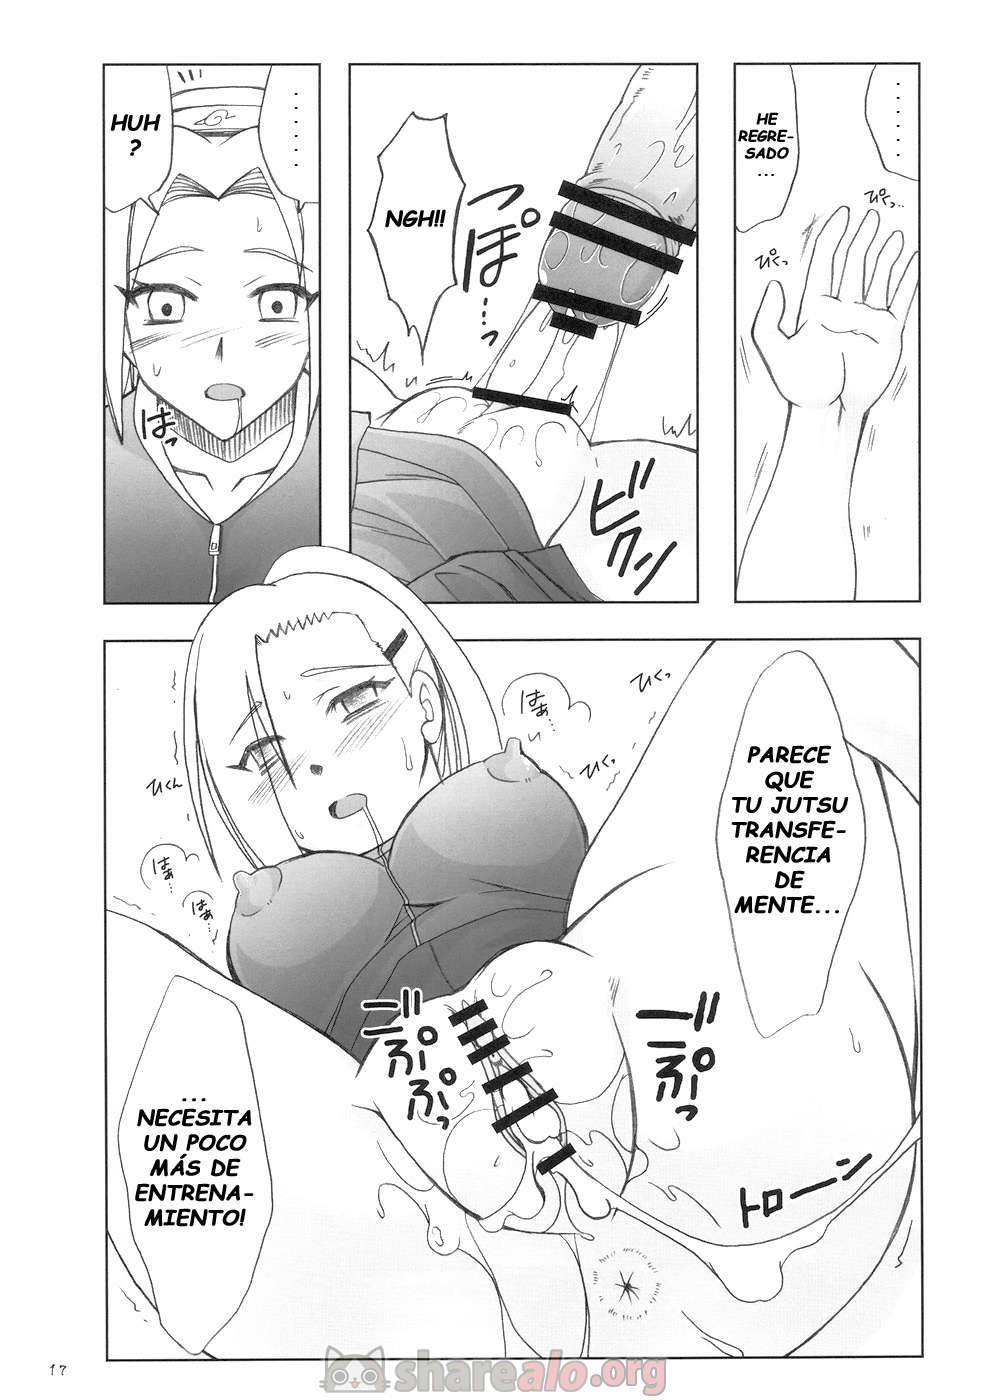 Futanari Kokoro Tenshin (Sakura se Folla a Ino Yamanaka) - 17 - Comics Porno - Hentai Manga - Cartoon XXX